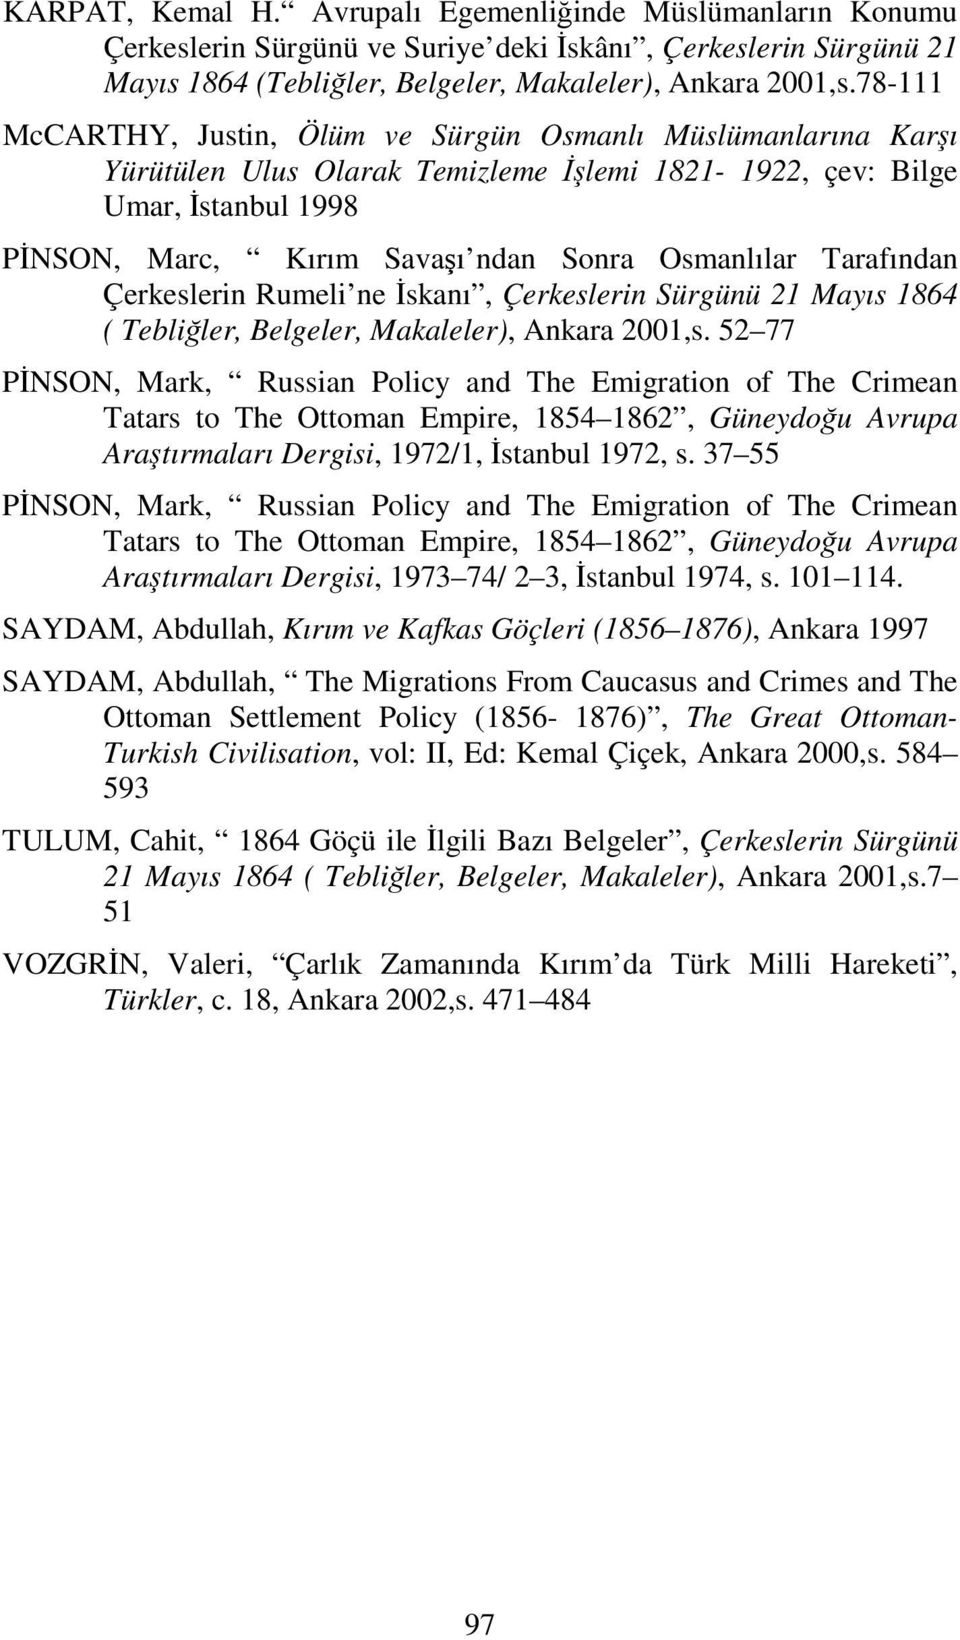 Tarafından Çerkeslerin Rumeli ne İskanı, Çerkeslerin Sürgünü 21 Mayıs 1864 ( Tebliğler, Belgeler, Makaleler), Ankara 2001,s.